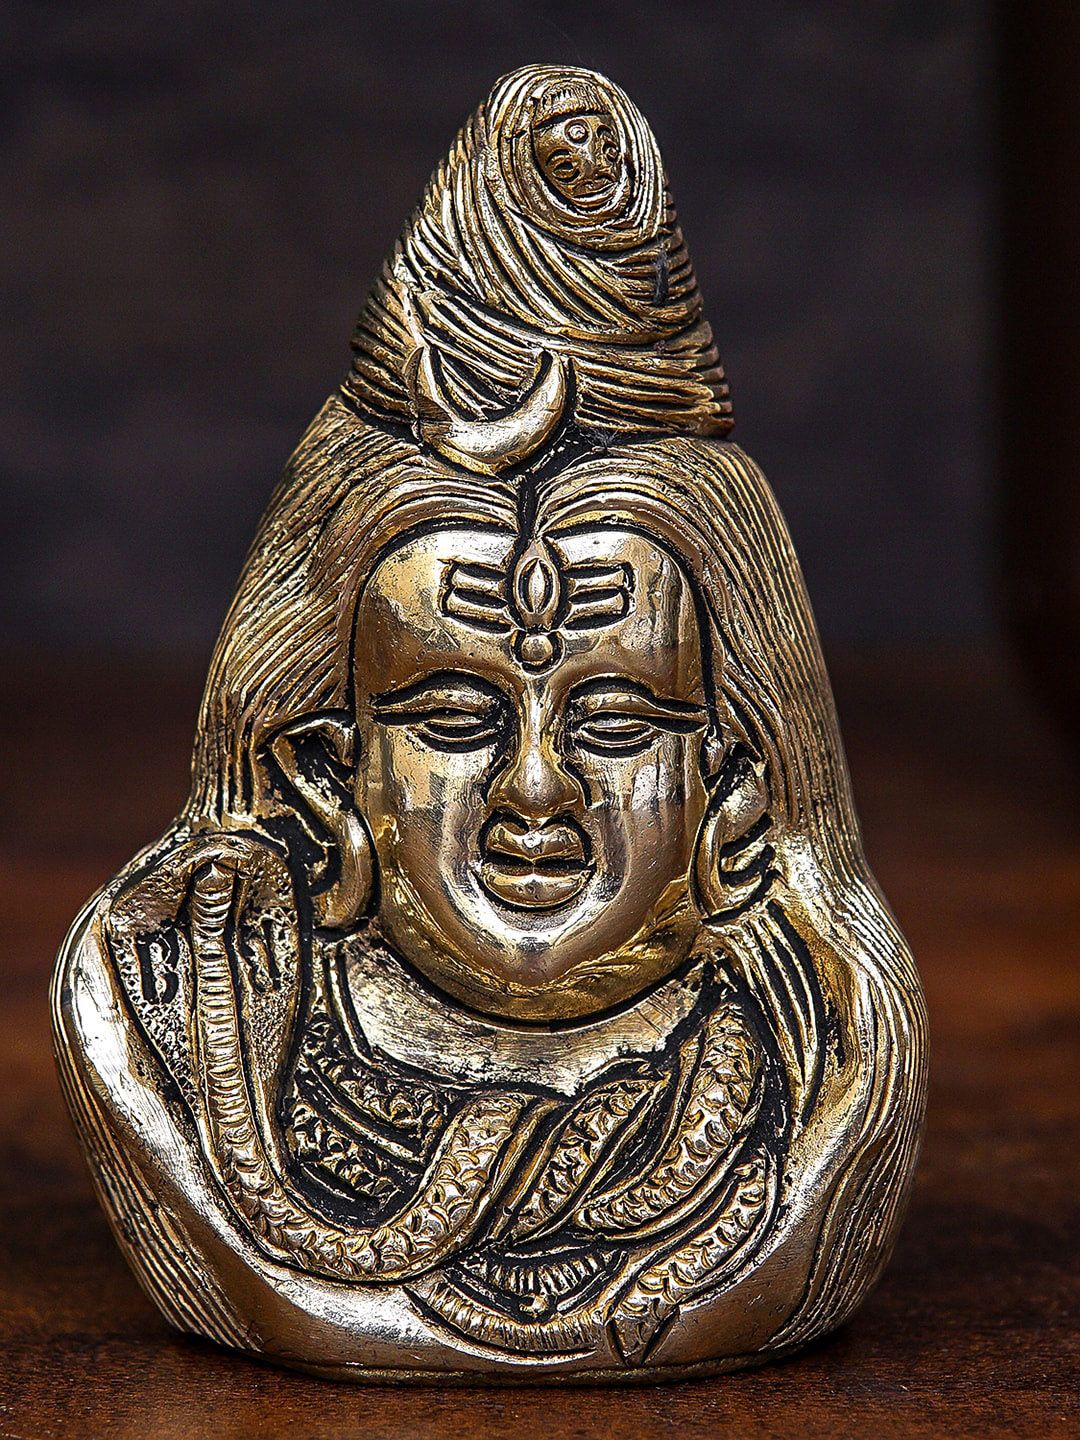 StatueStudio Gold-Toned Shiva Head Small Idol Showpieces Price in India